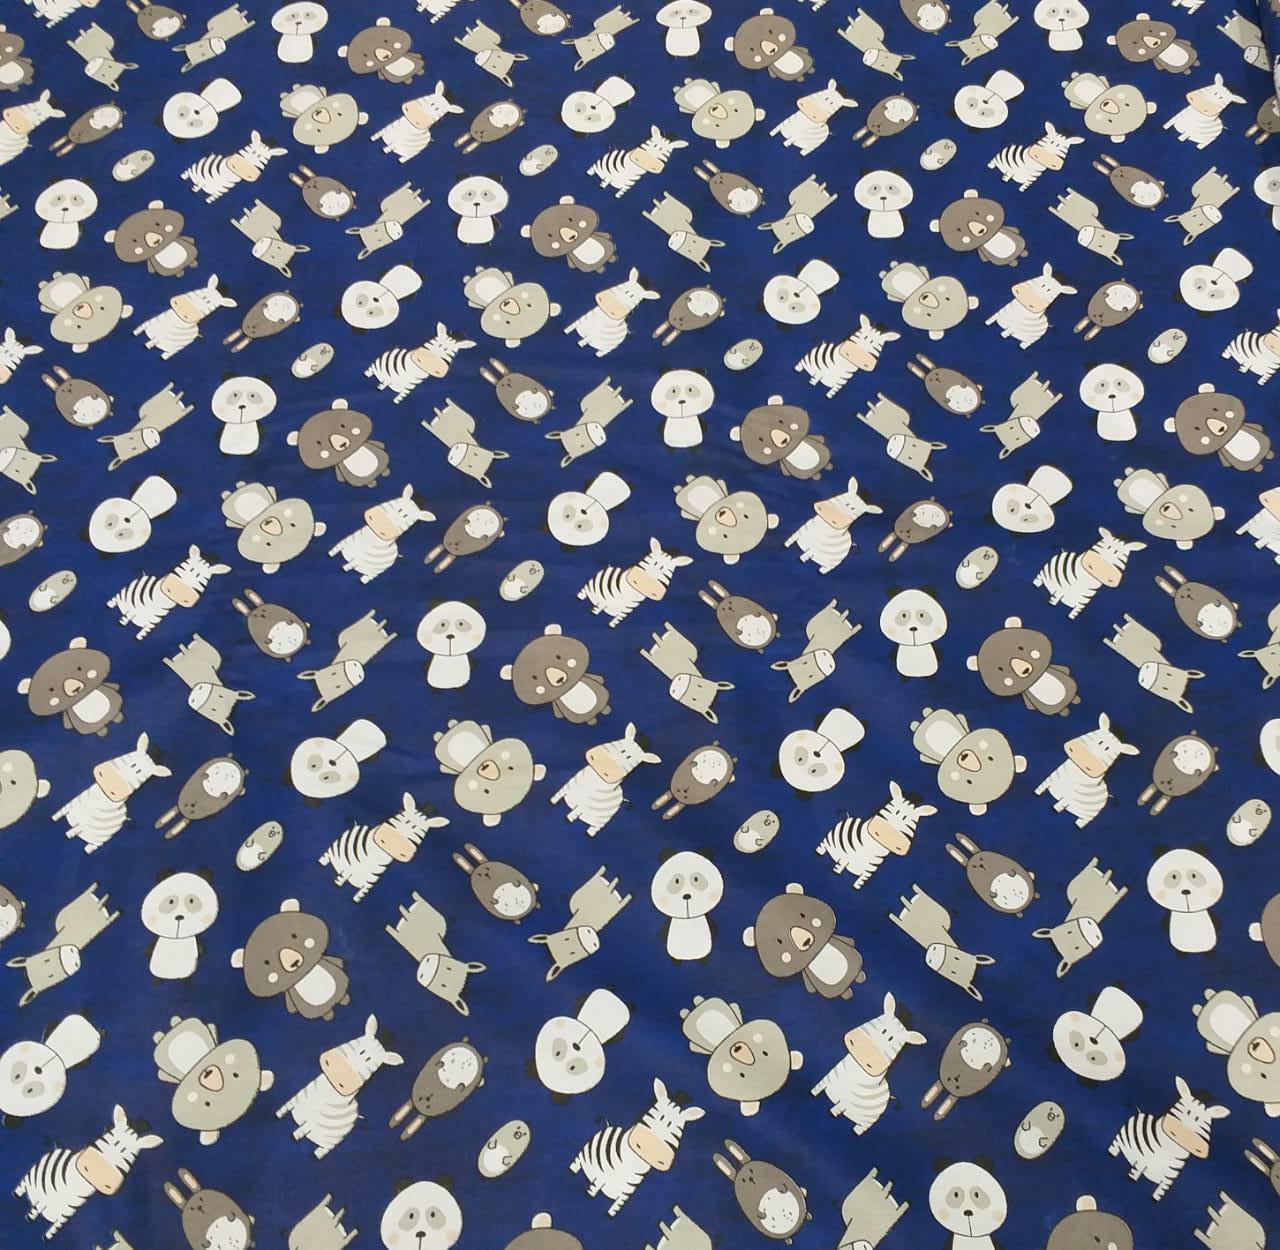 Tecido Plush - Azul Marinho - 1,70m de Largura - Tiradentes Têxtil